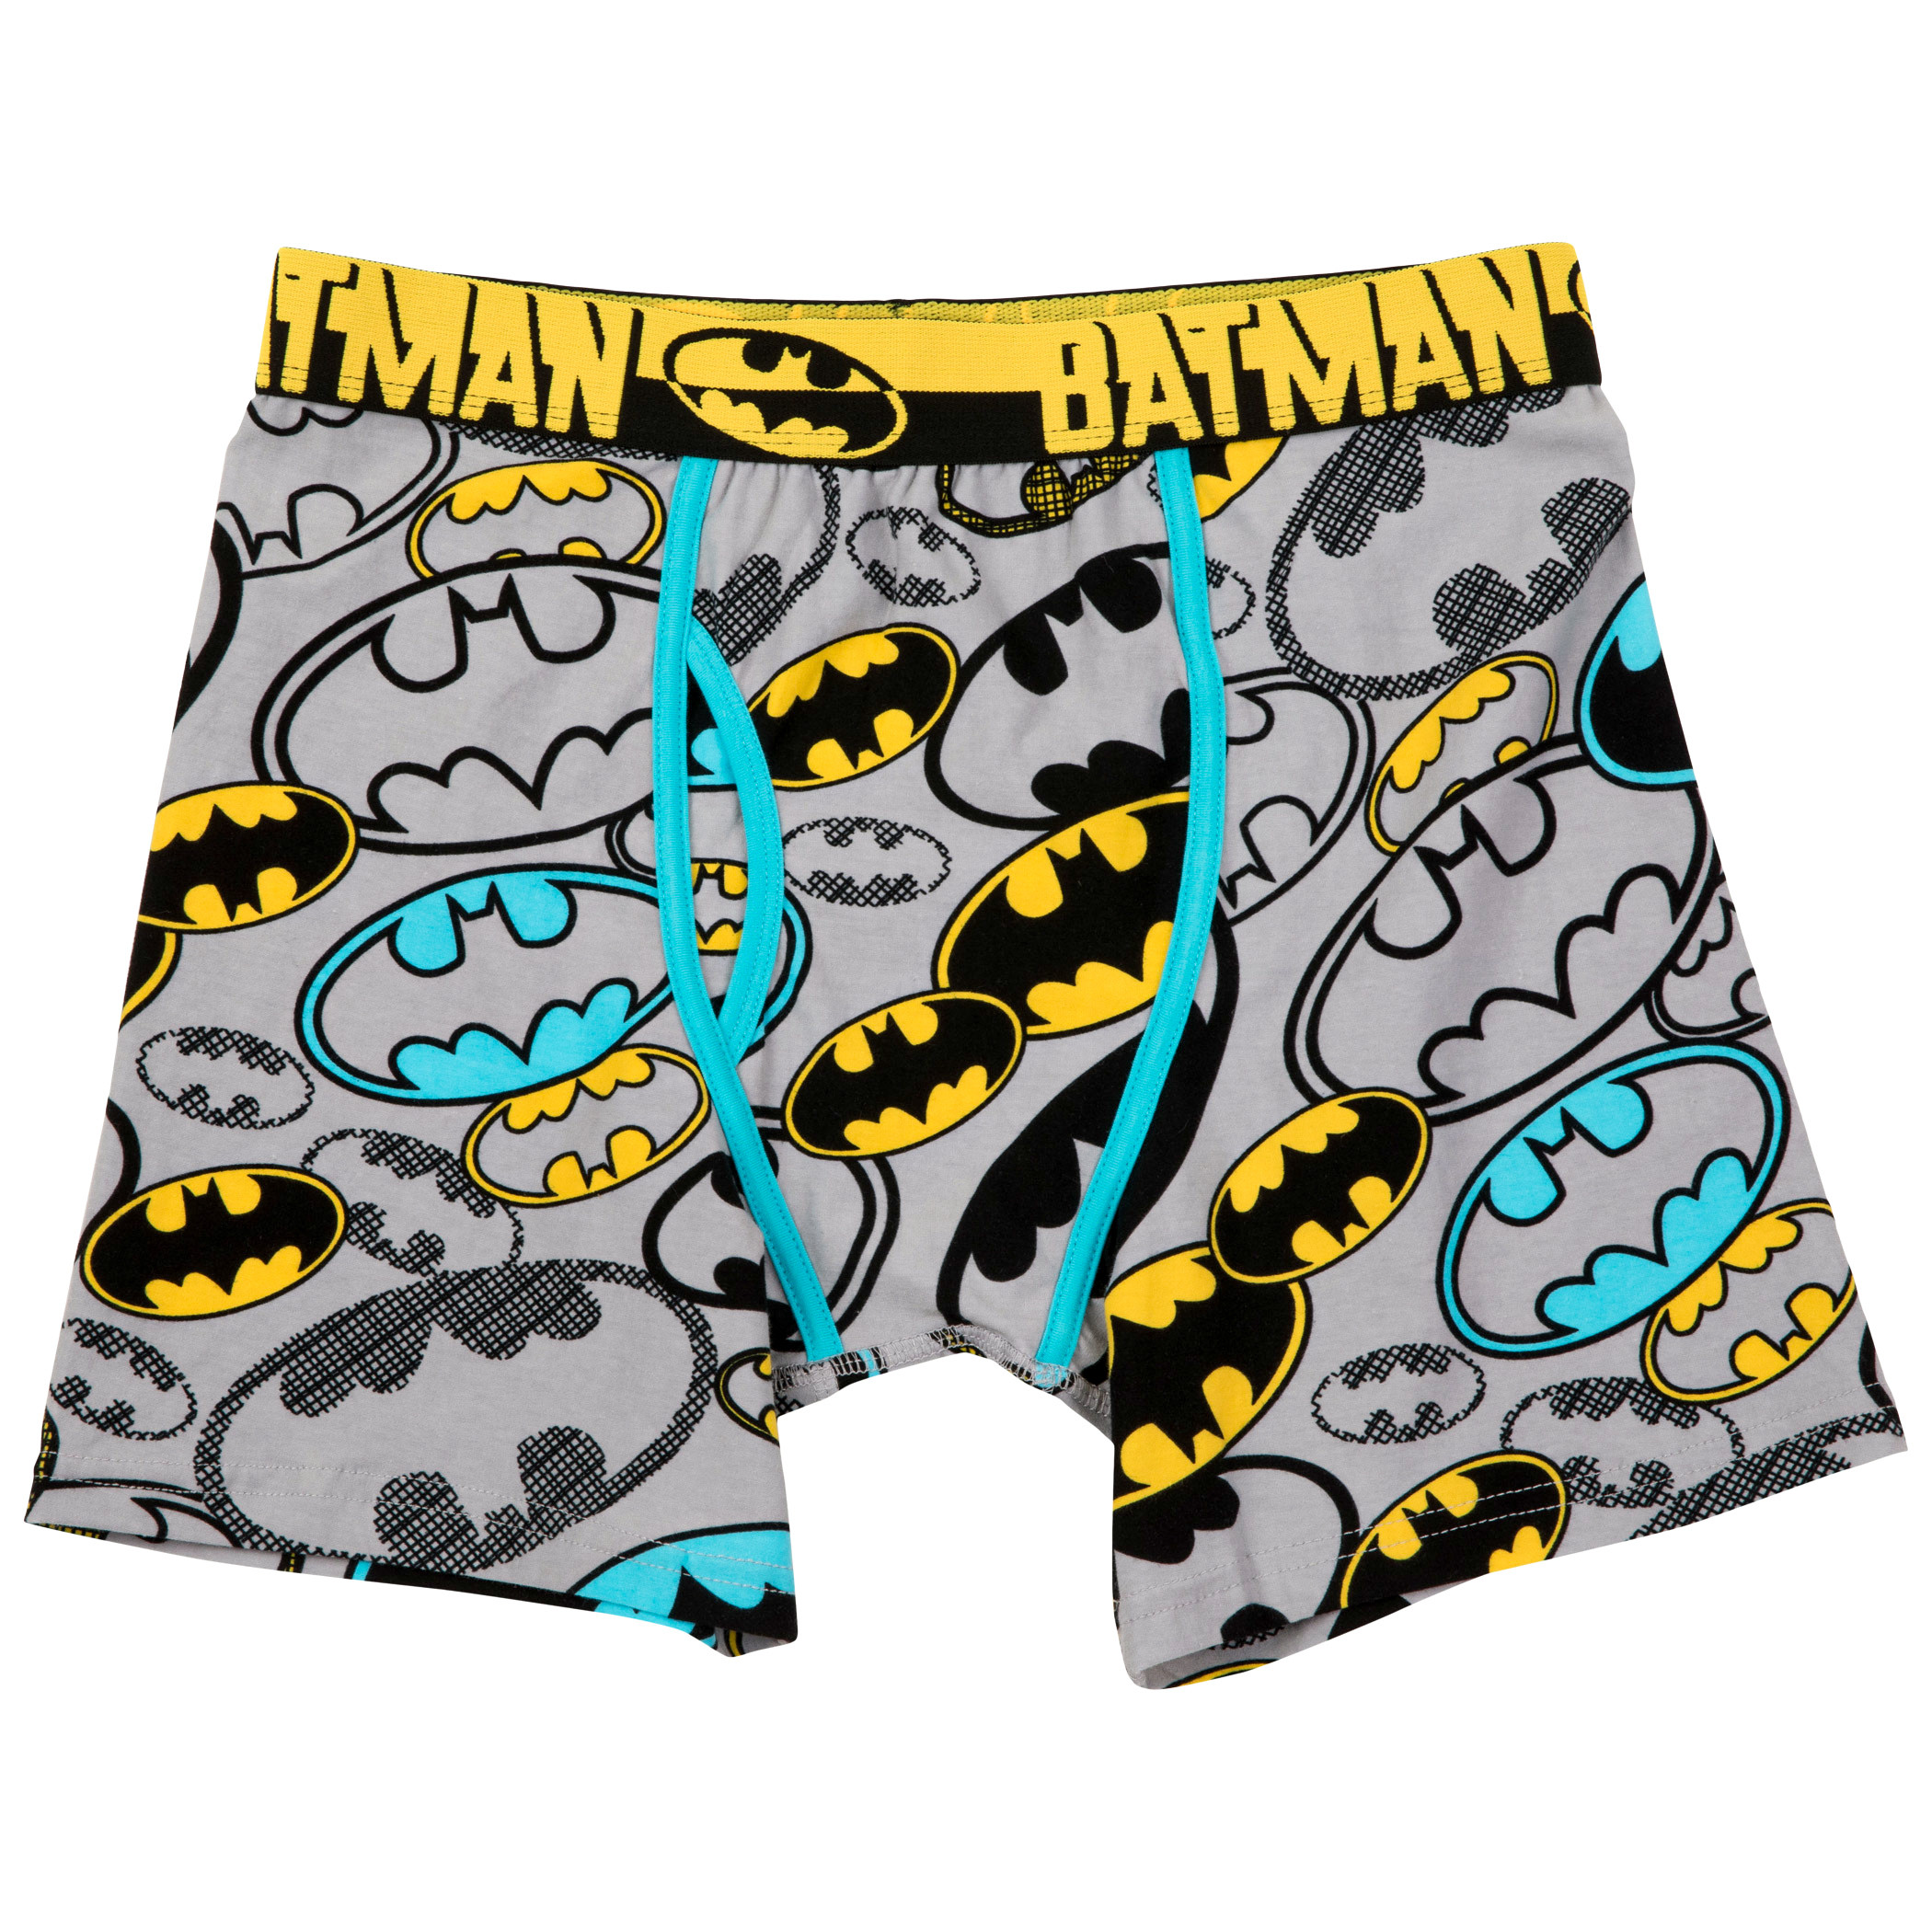 Batman Multicolor Symbols Boxer Briefs